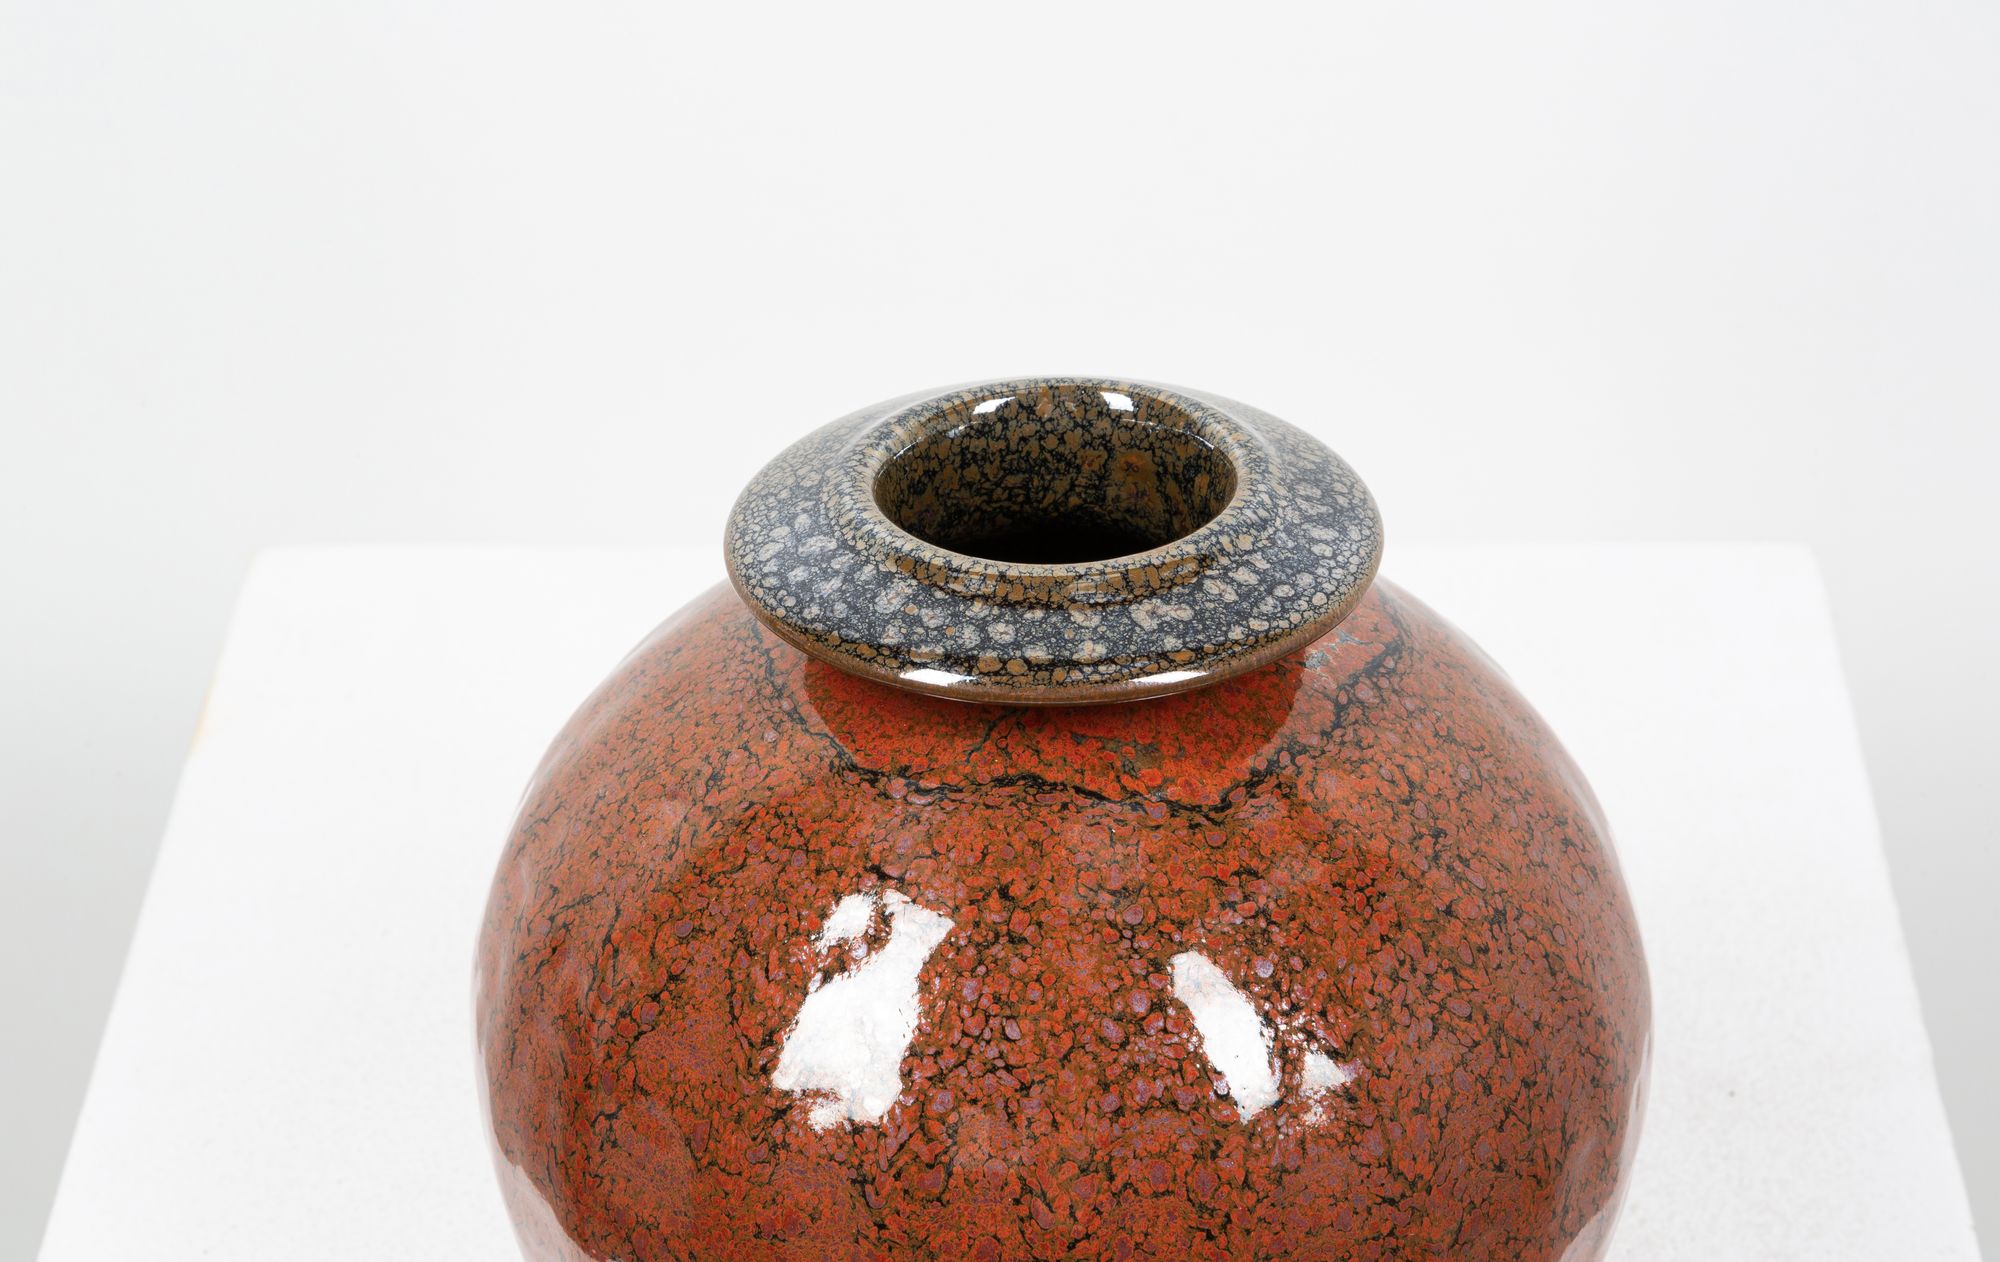 DANIEL DE MONTMOLLIN ceramic vase